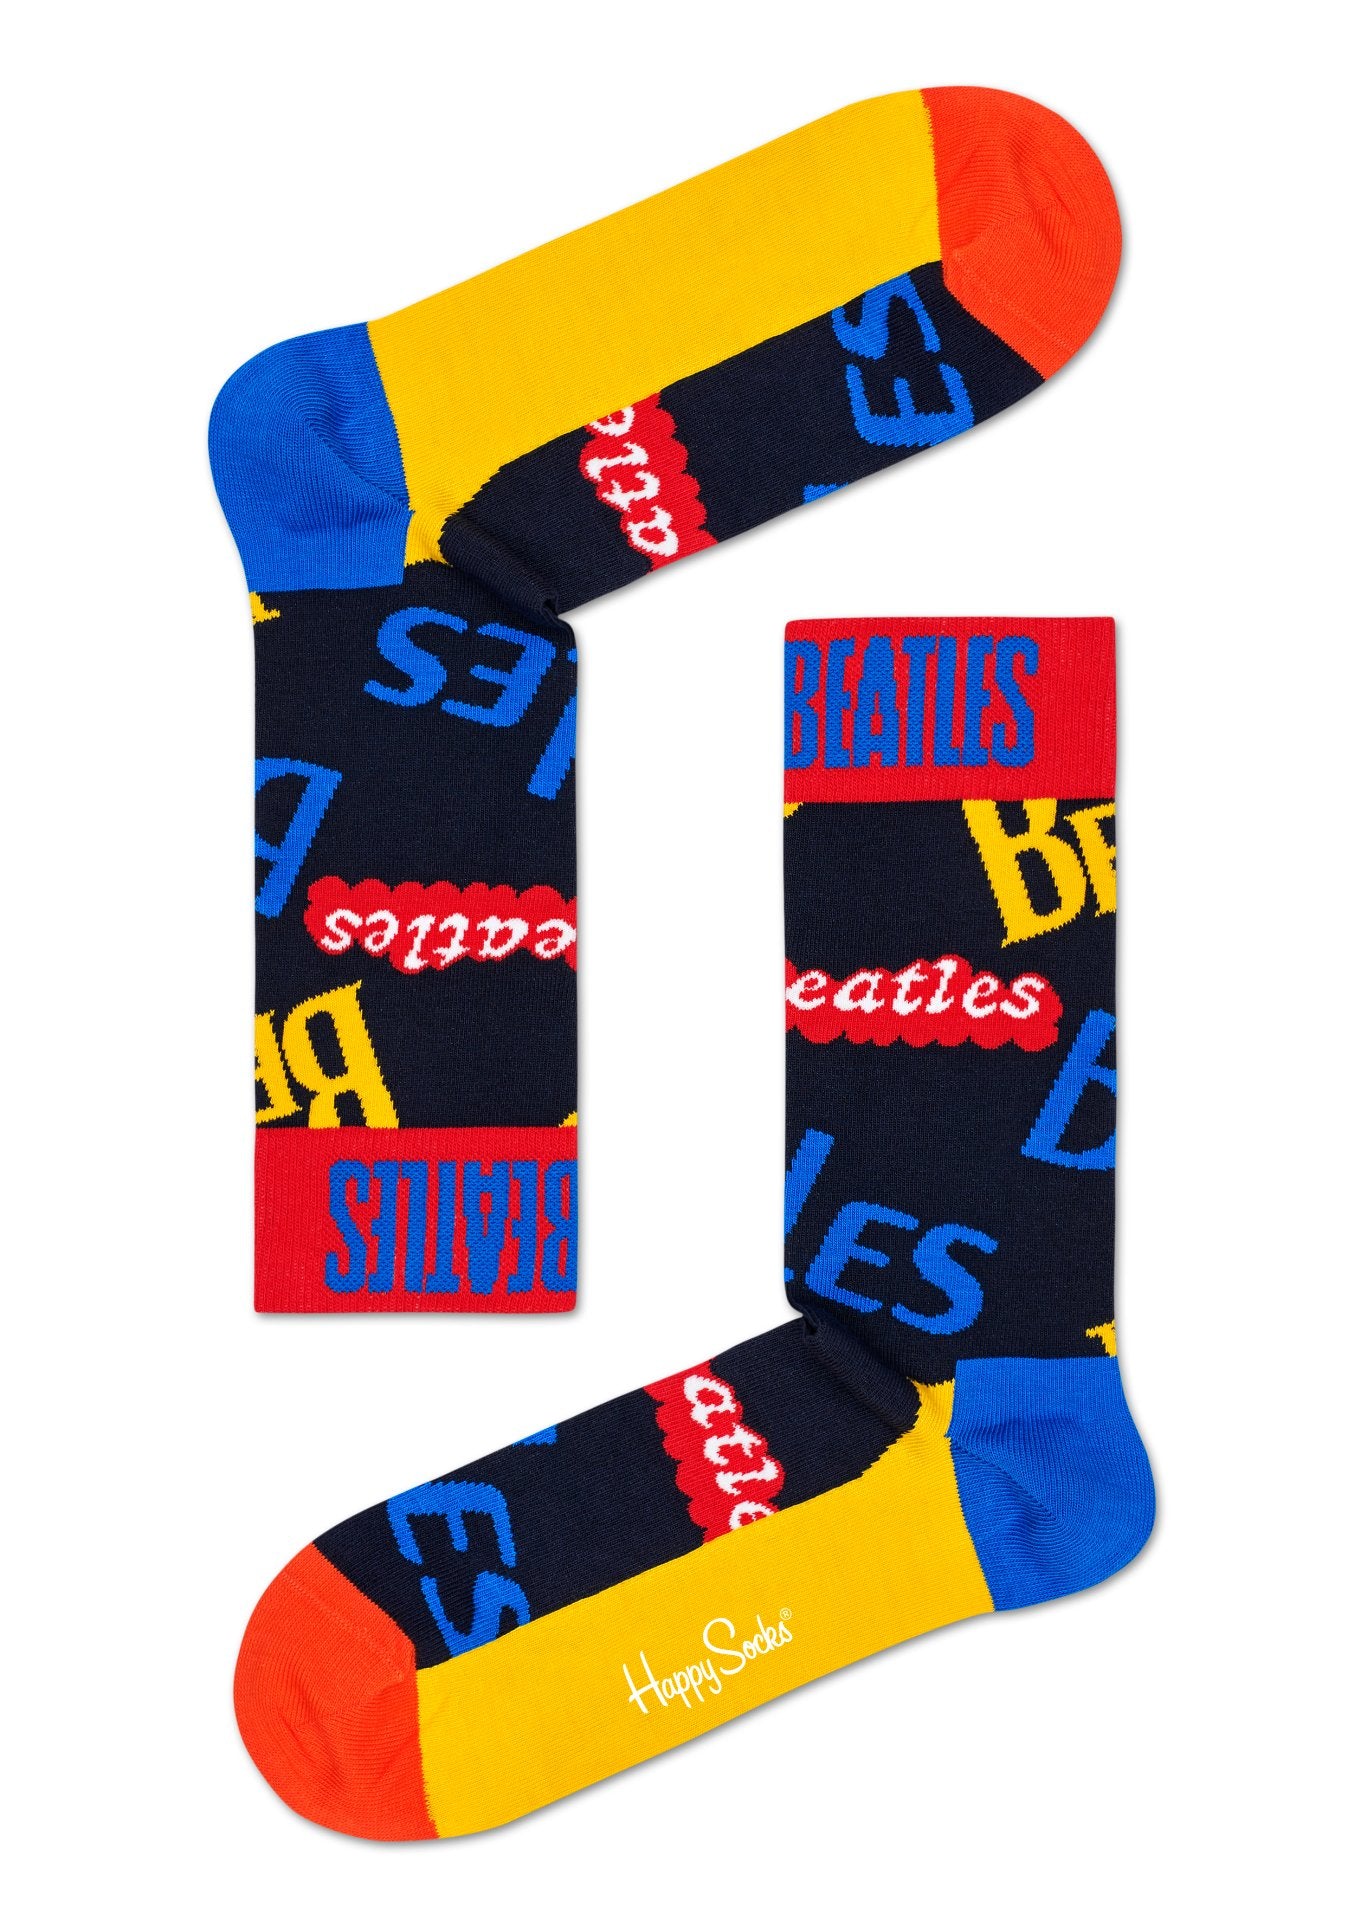 Modré ponožky s nápisy Beatles z kolekce Happy Socks x Beatles, vzor In The Name Of